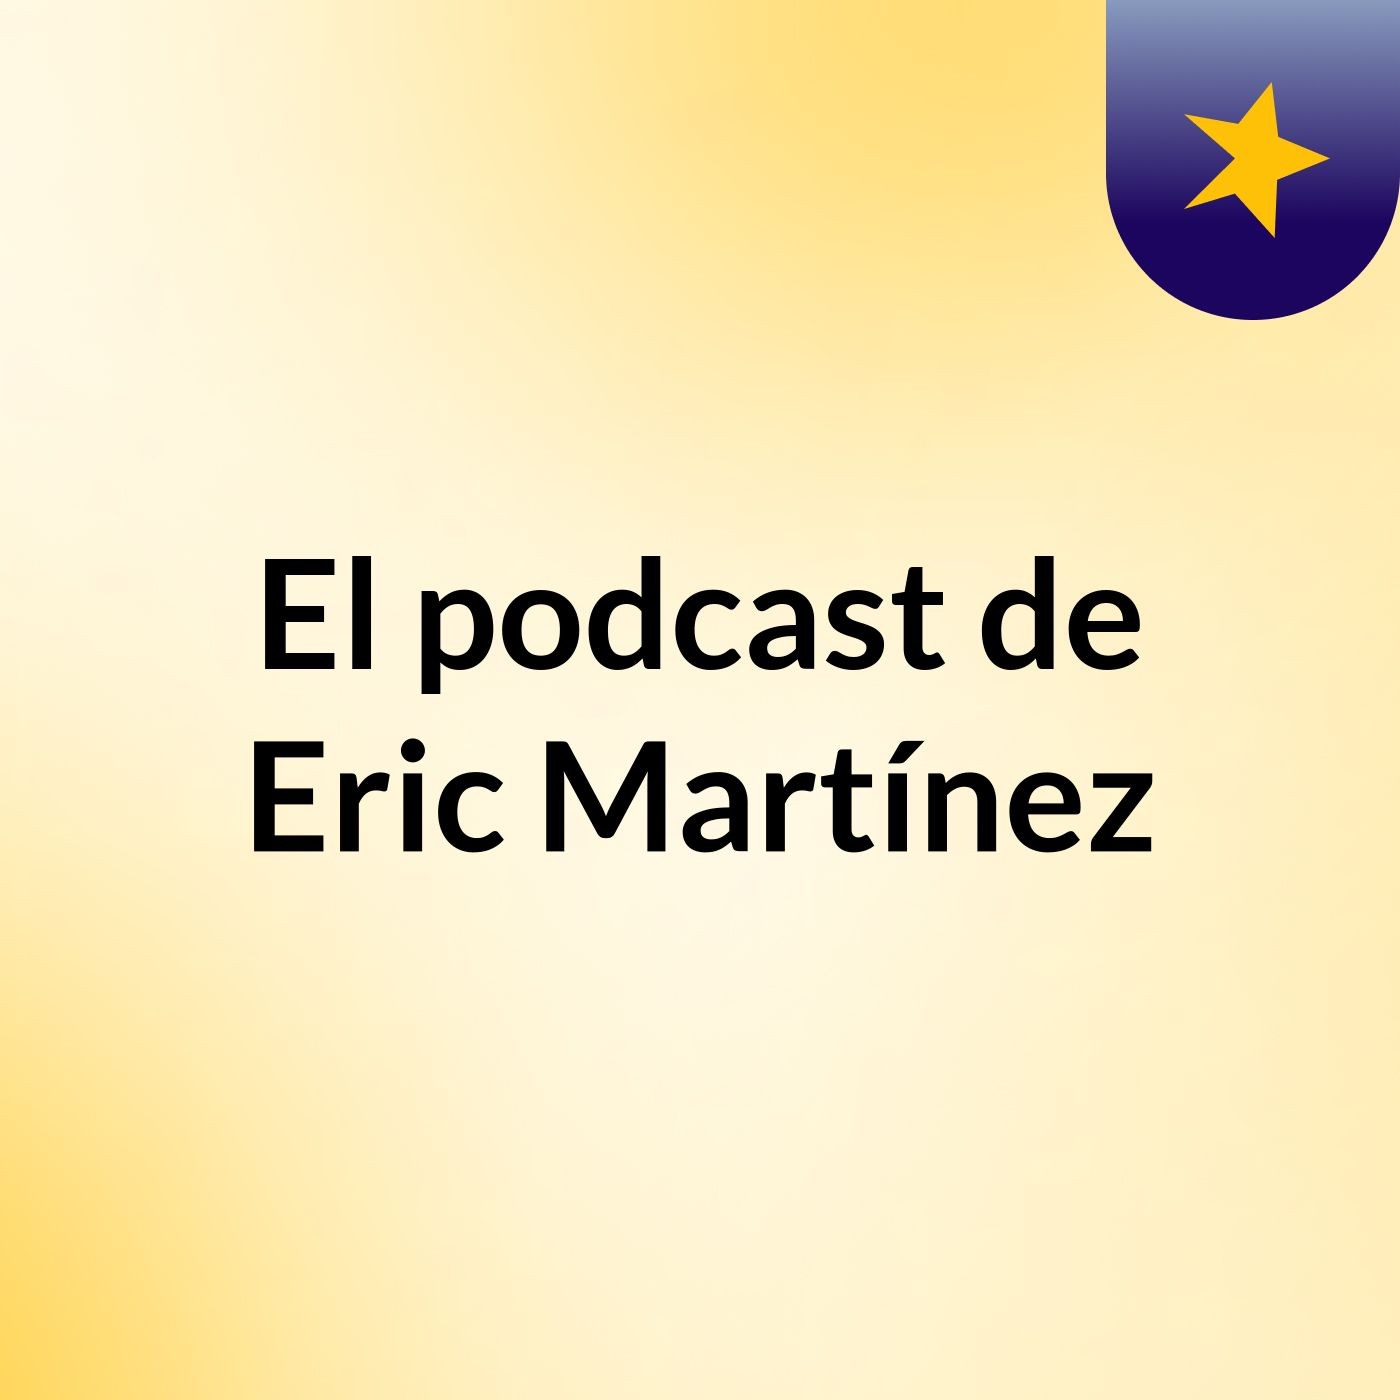 Episodio 2 - El podcast de Eric Martínez